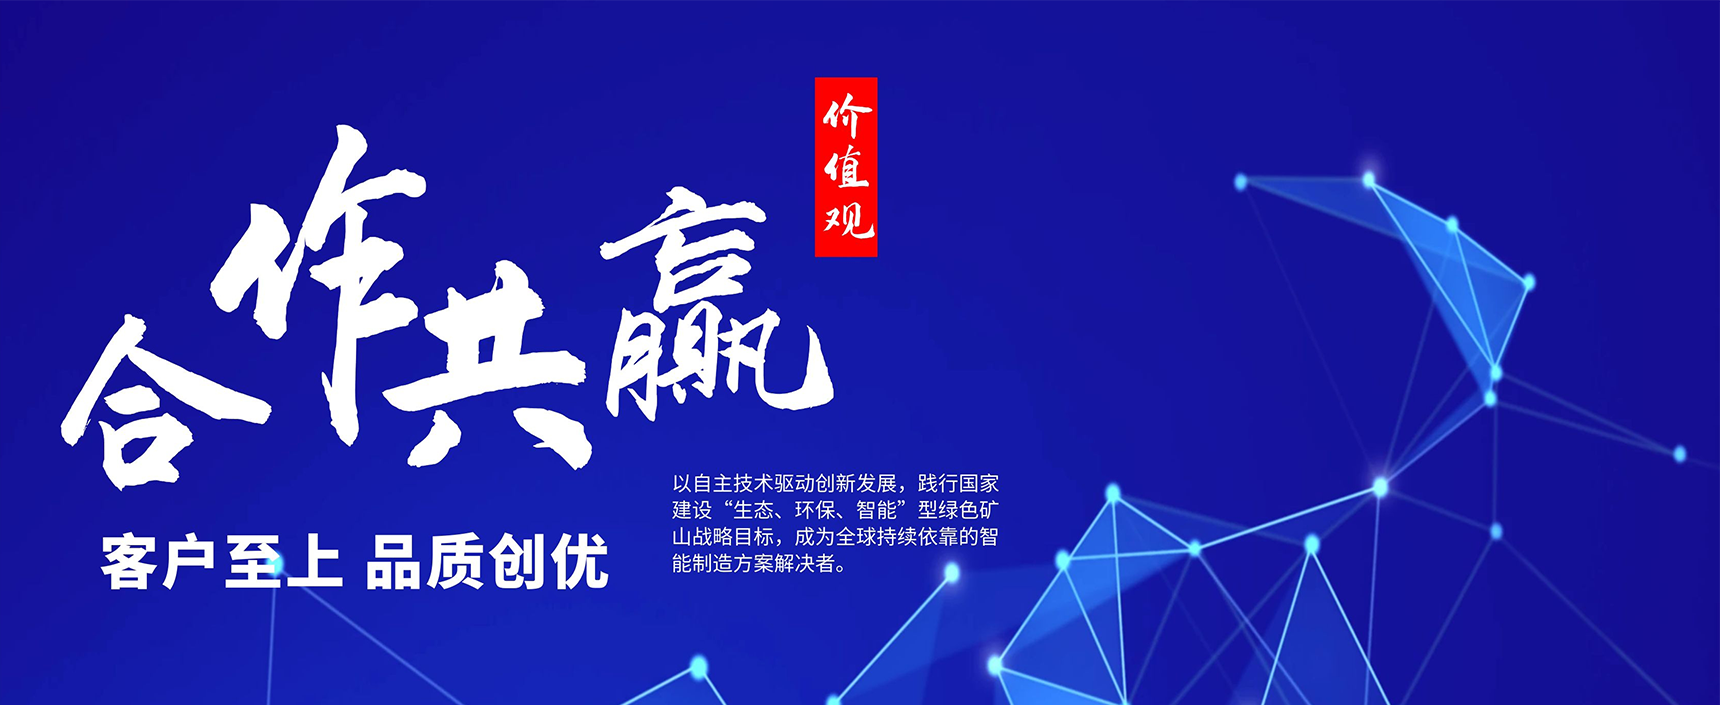 湖南军芃科技股份有限公司